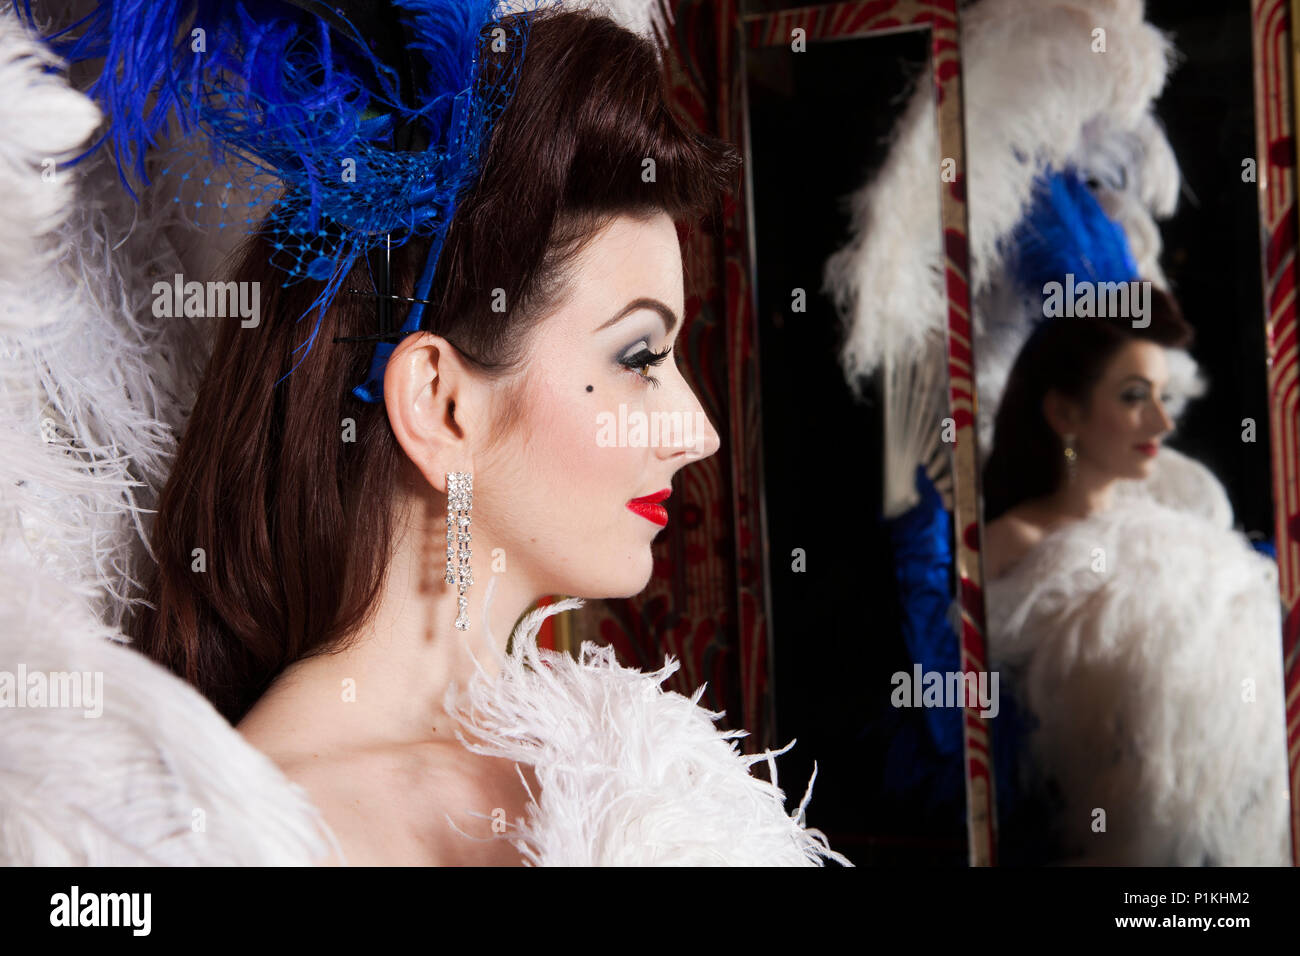 Artiste Burlesque Polly Rae chez Madame Jojos, le port de tête en plumes bleu et bleu robe corset, Londres. Banque D'Images